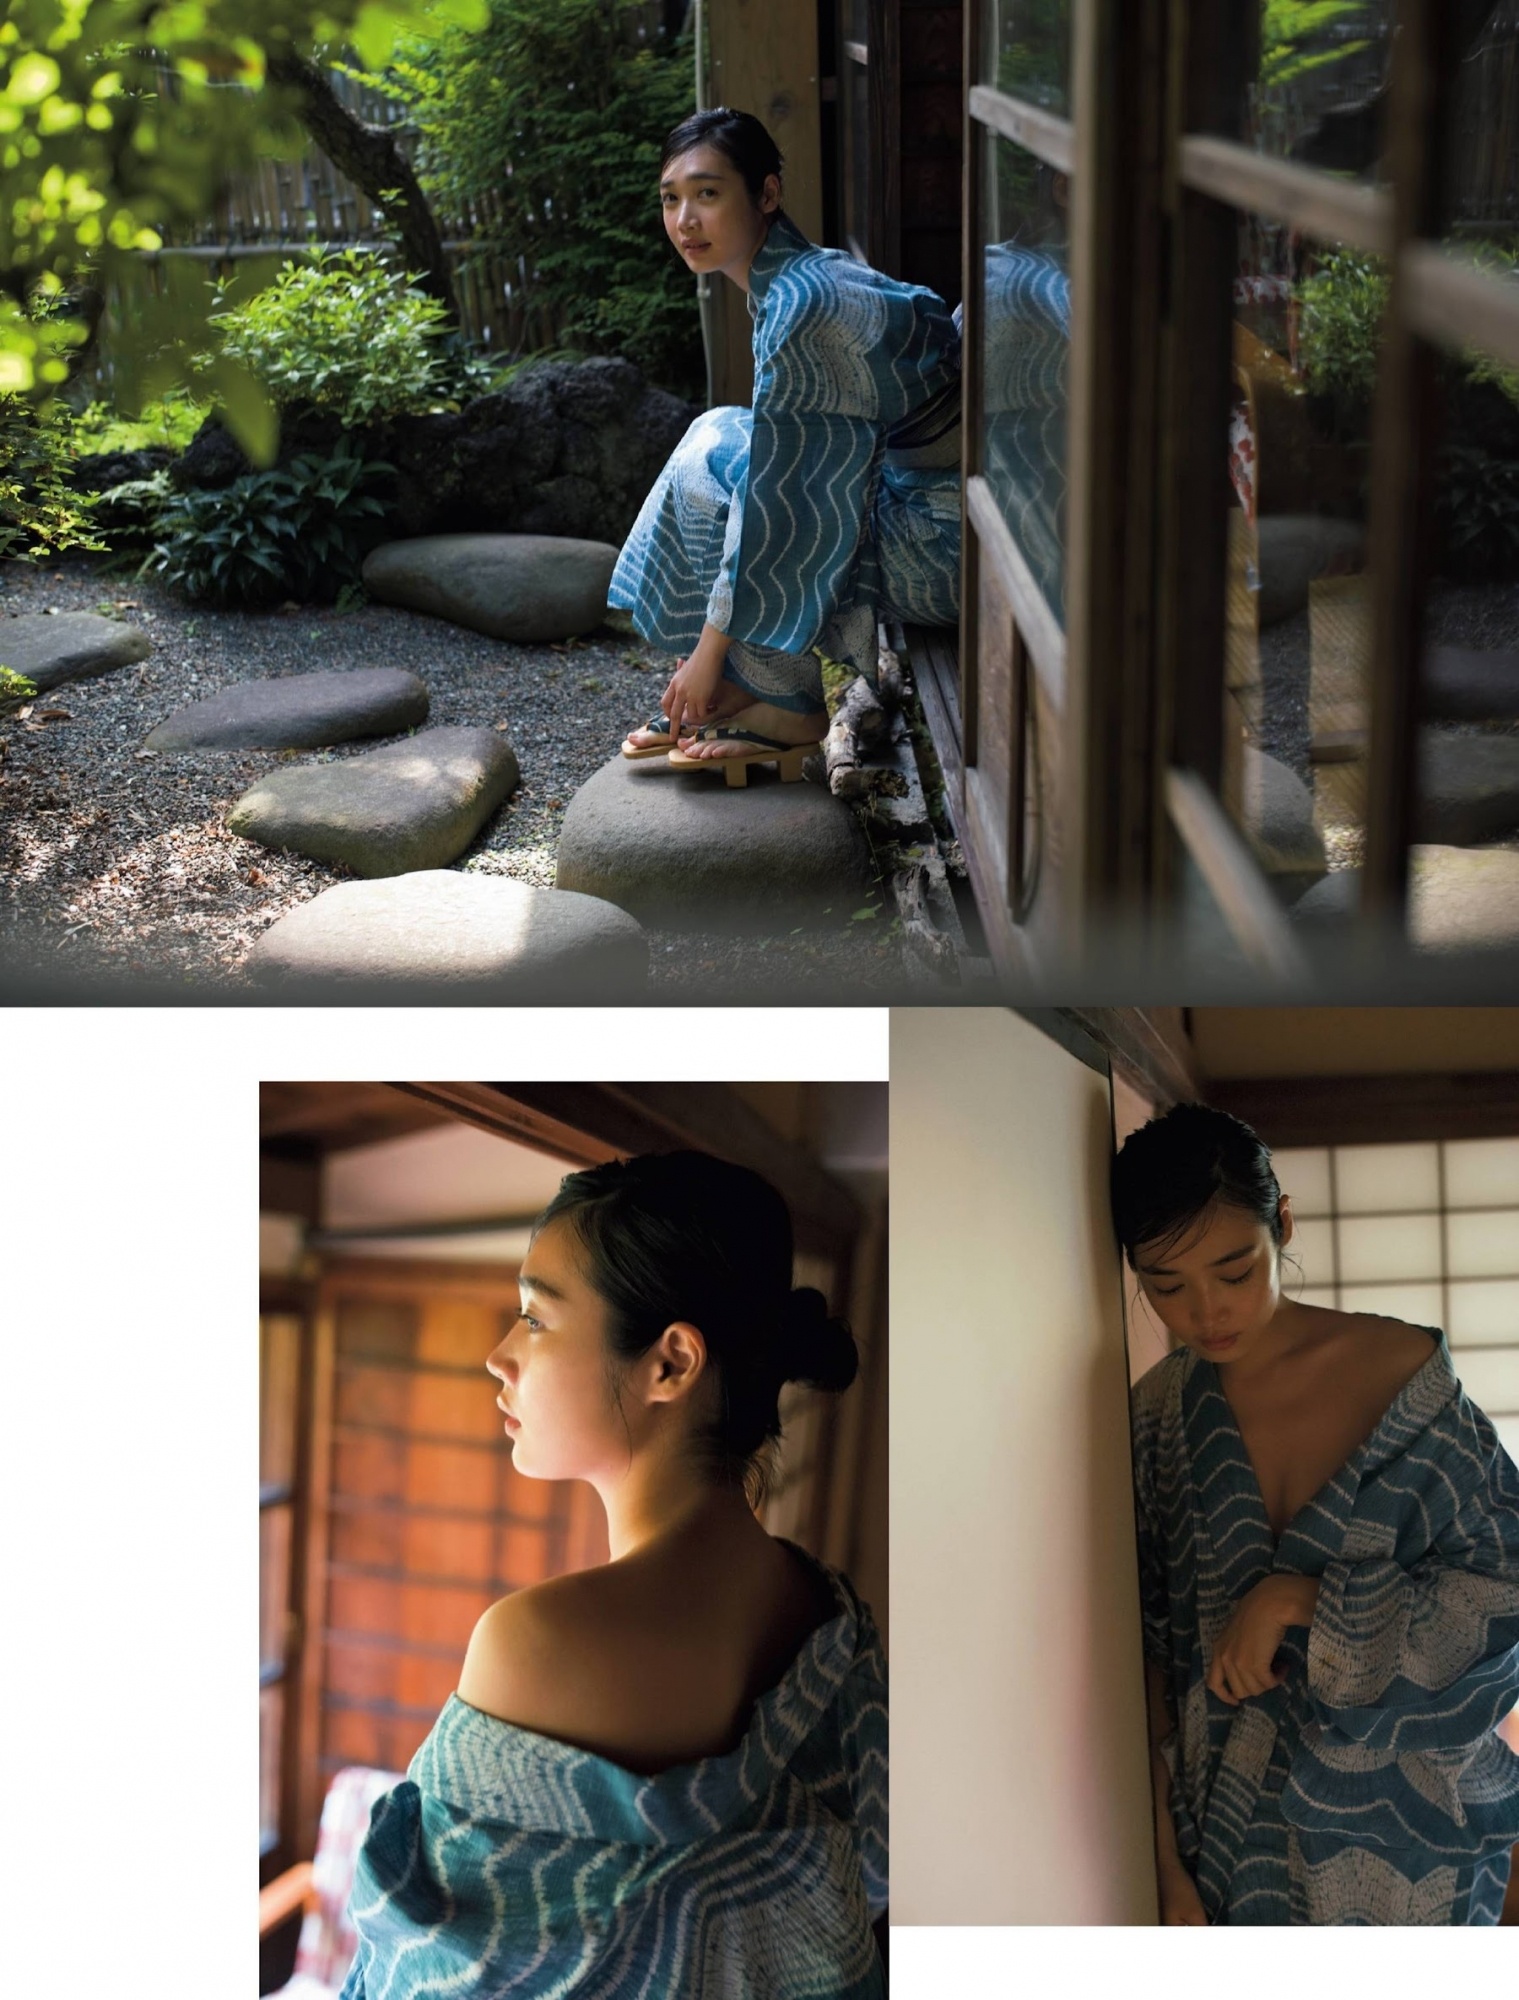 27岁的林田岬优转入写真圈已经是业界一线写真女星。